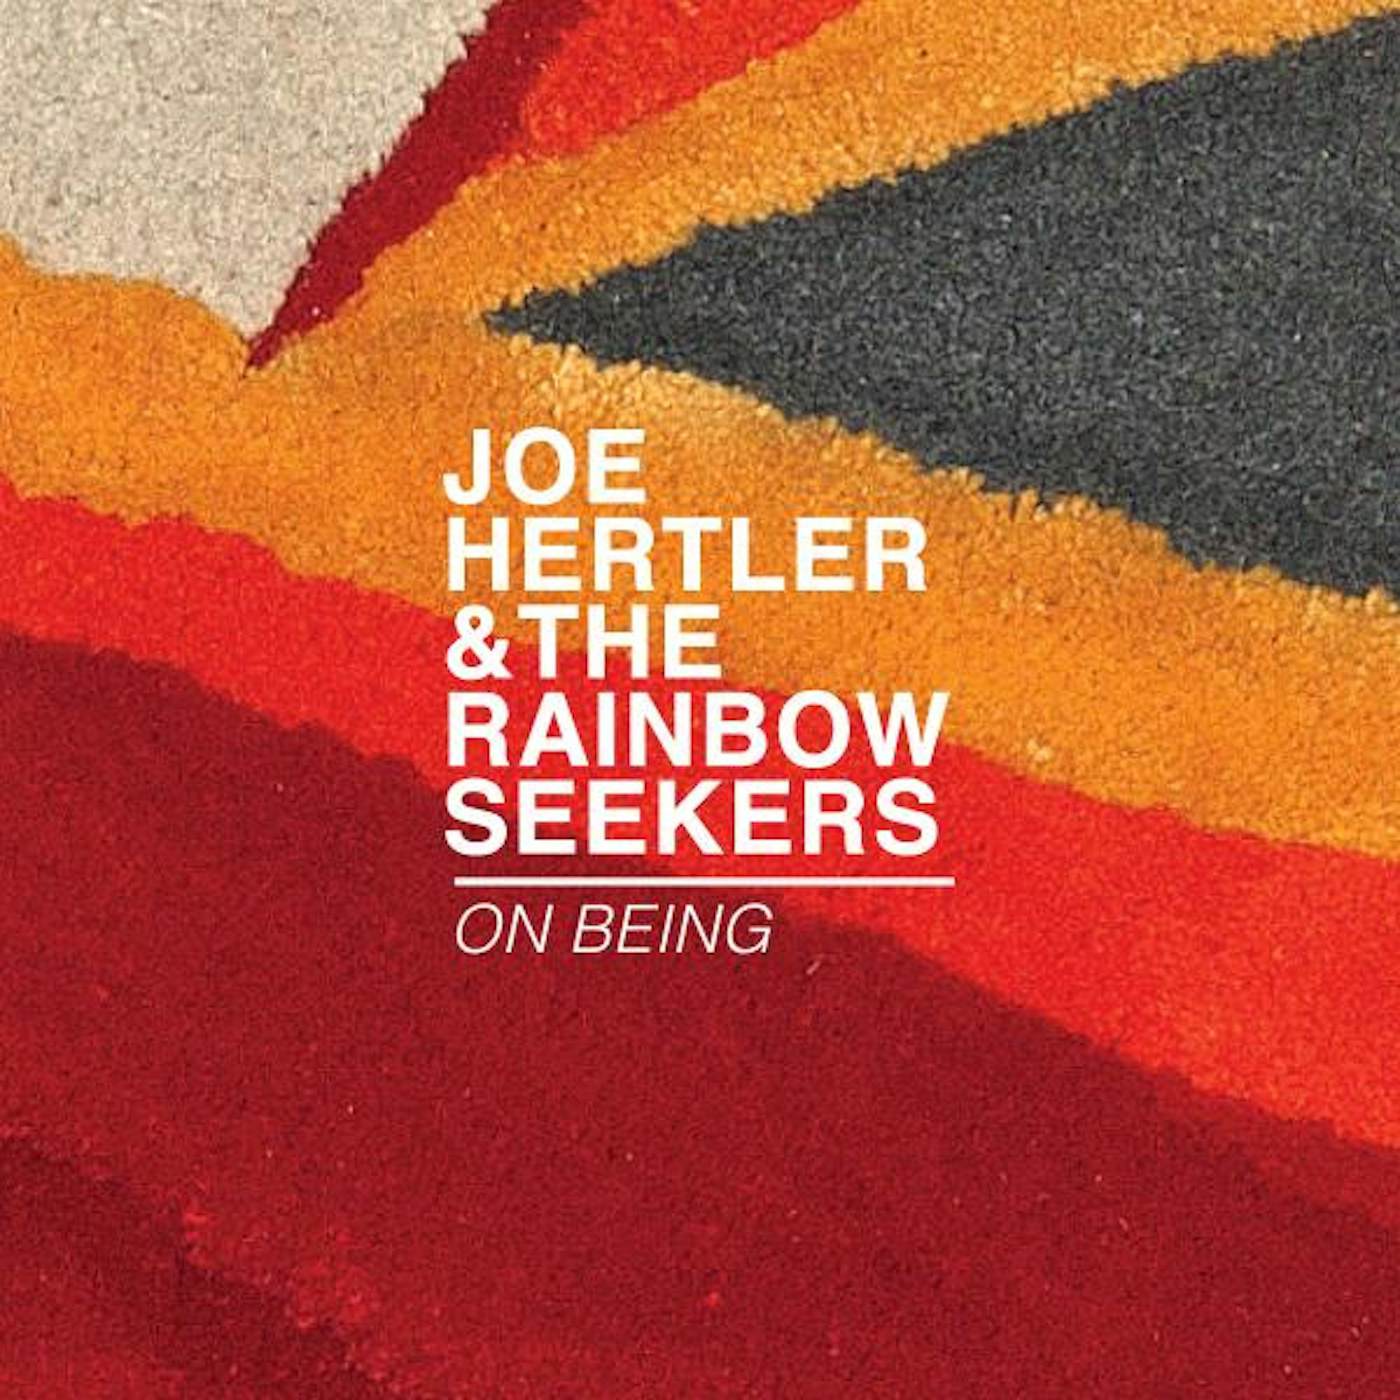 Joe Hertler & The Rainbow Seekers On Being Vinyl Record